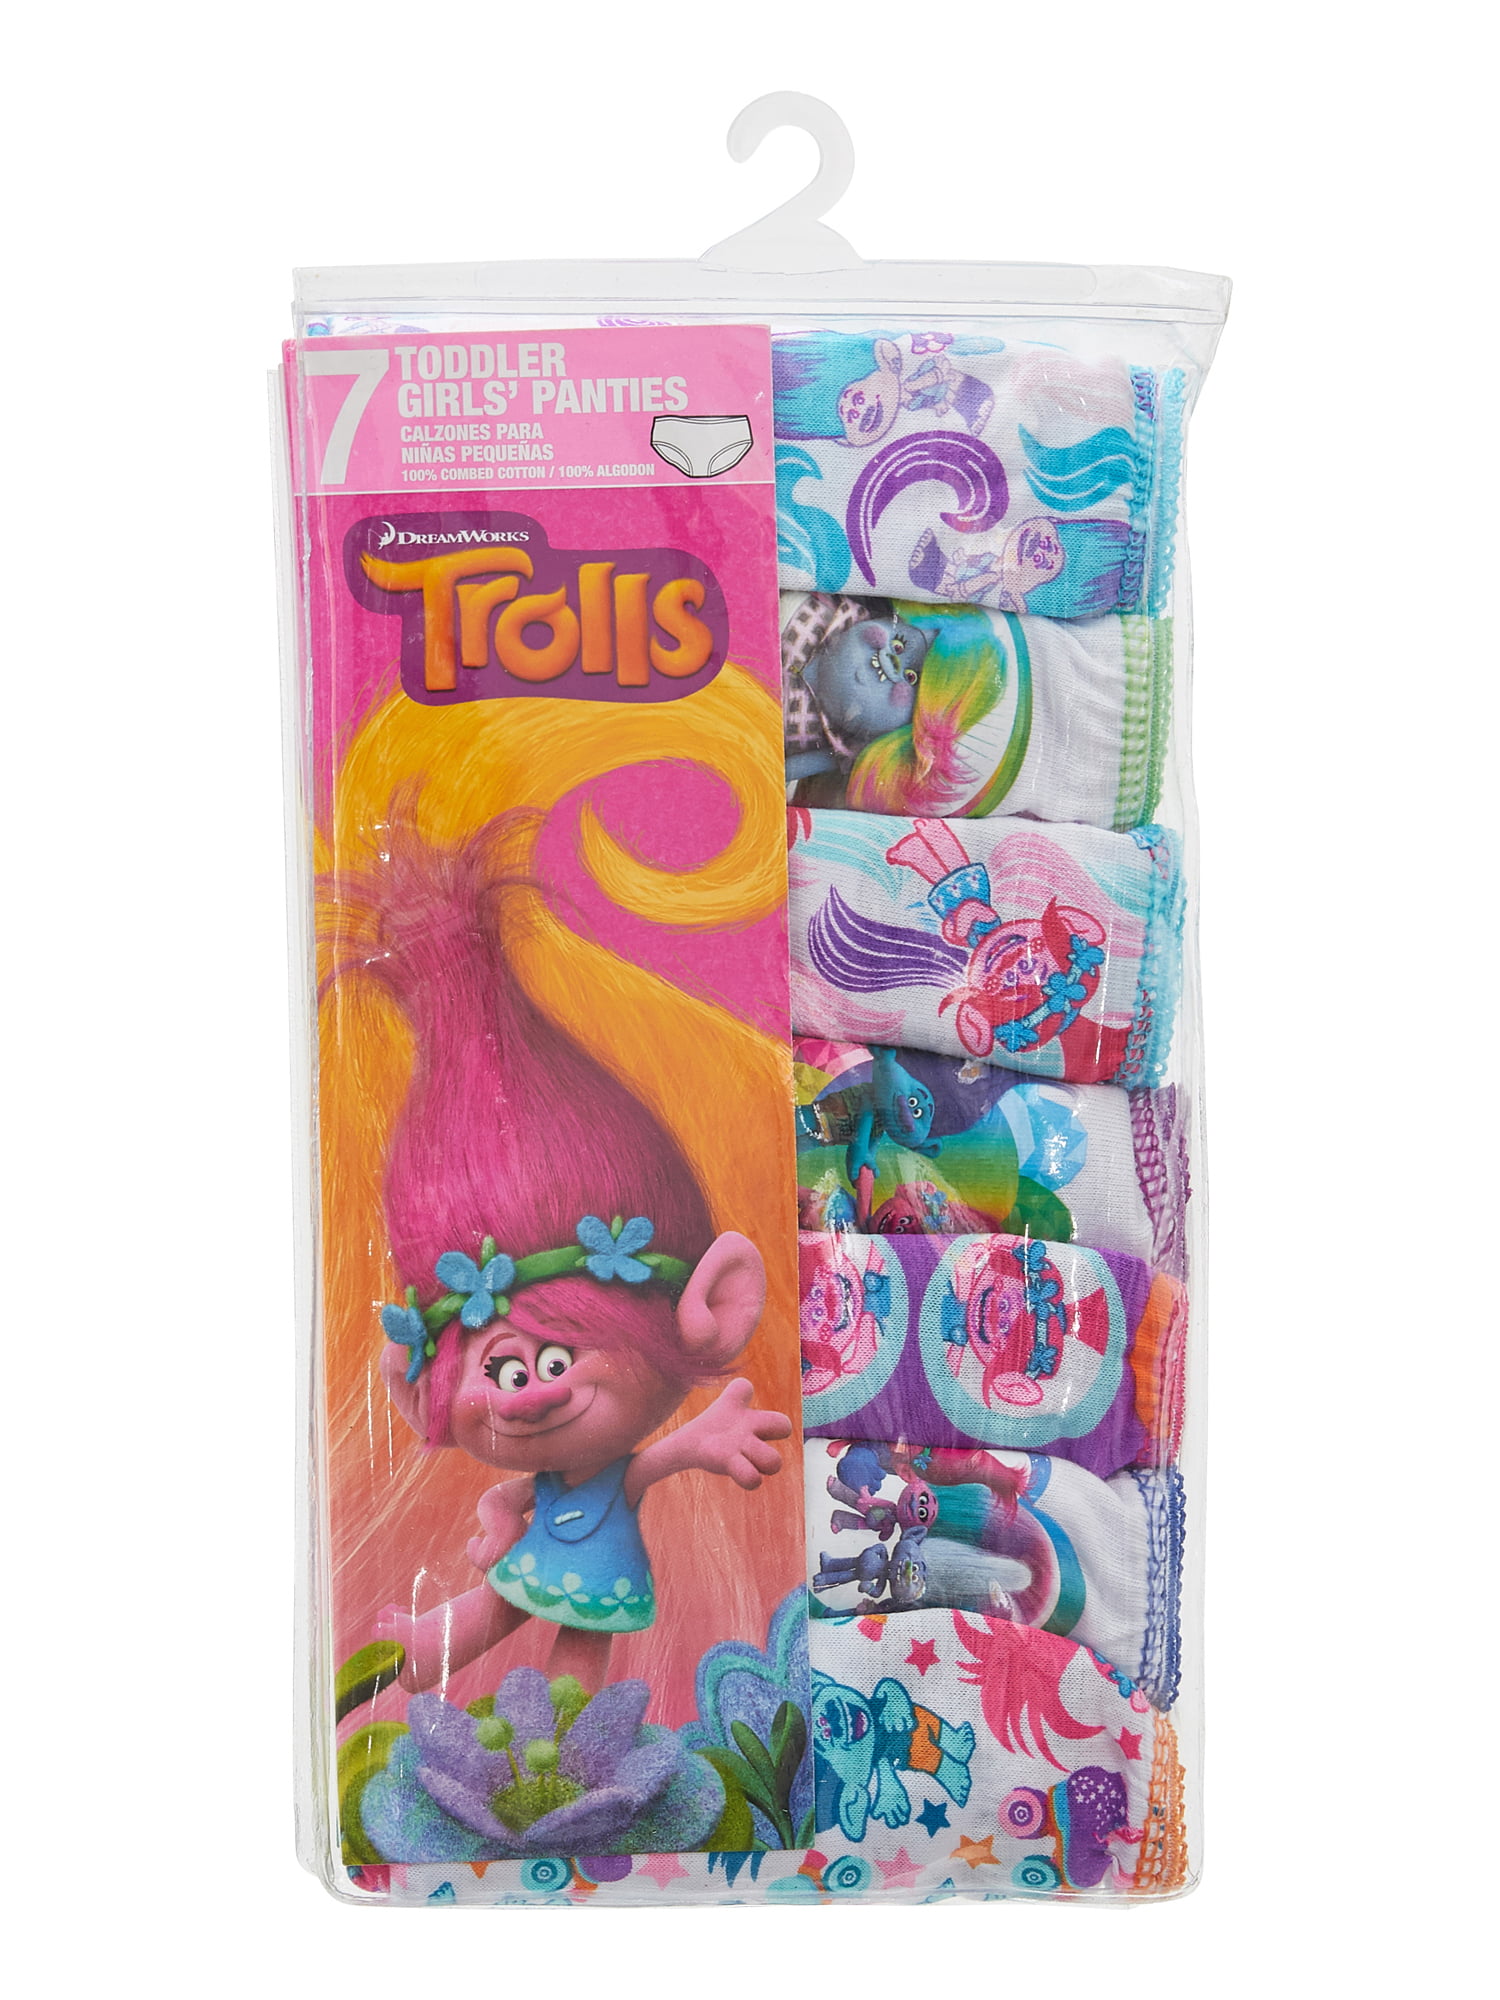 Trolls Toddler Girl Briefs Underwear, 7-Pack, Sizes 2T-4T